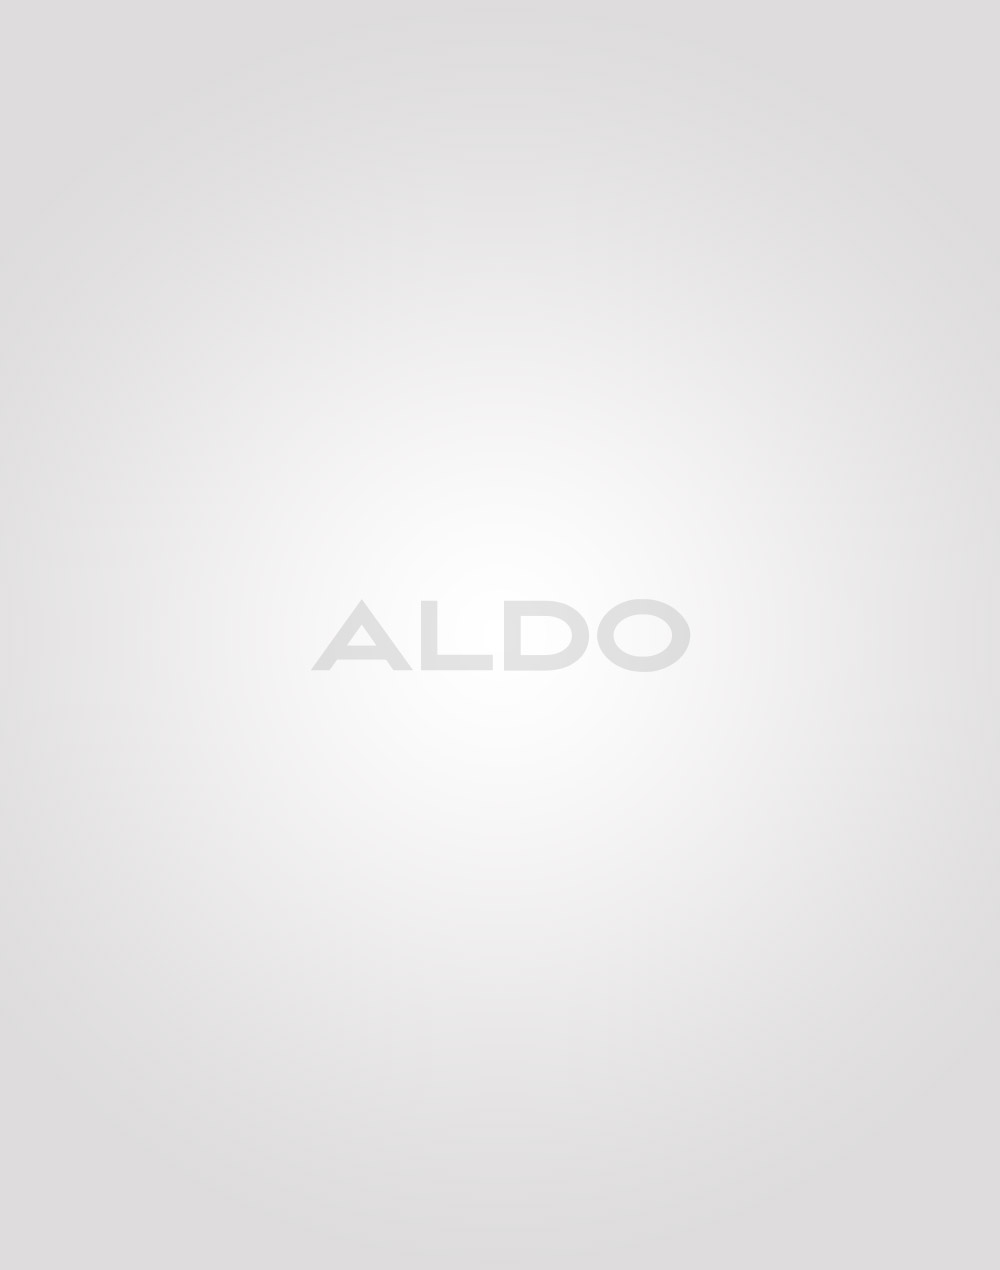 Aldo sredstvo za održavanje prave i umjetne kože 471_045 -